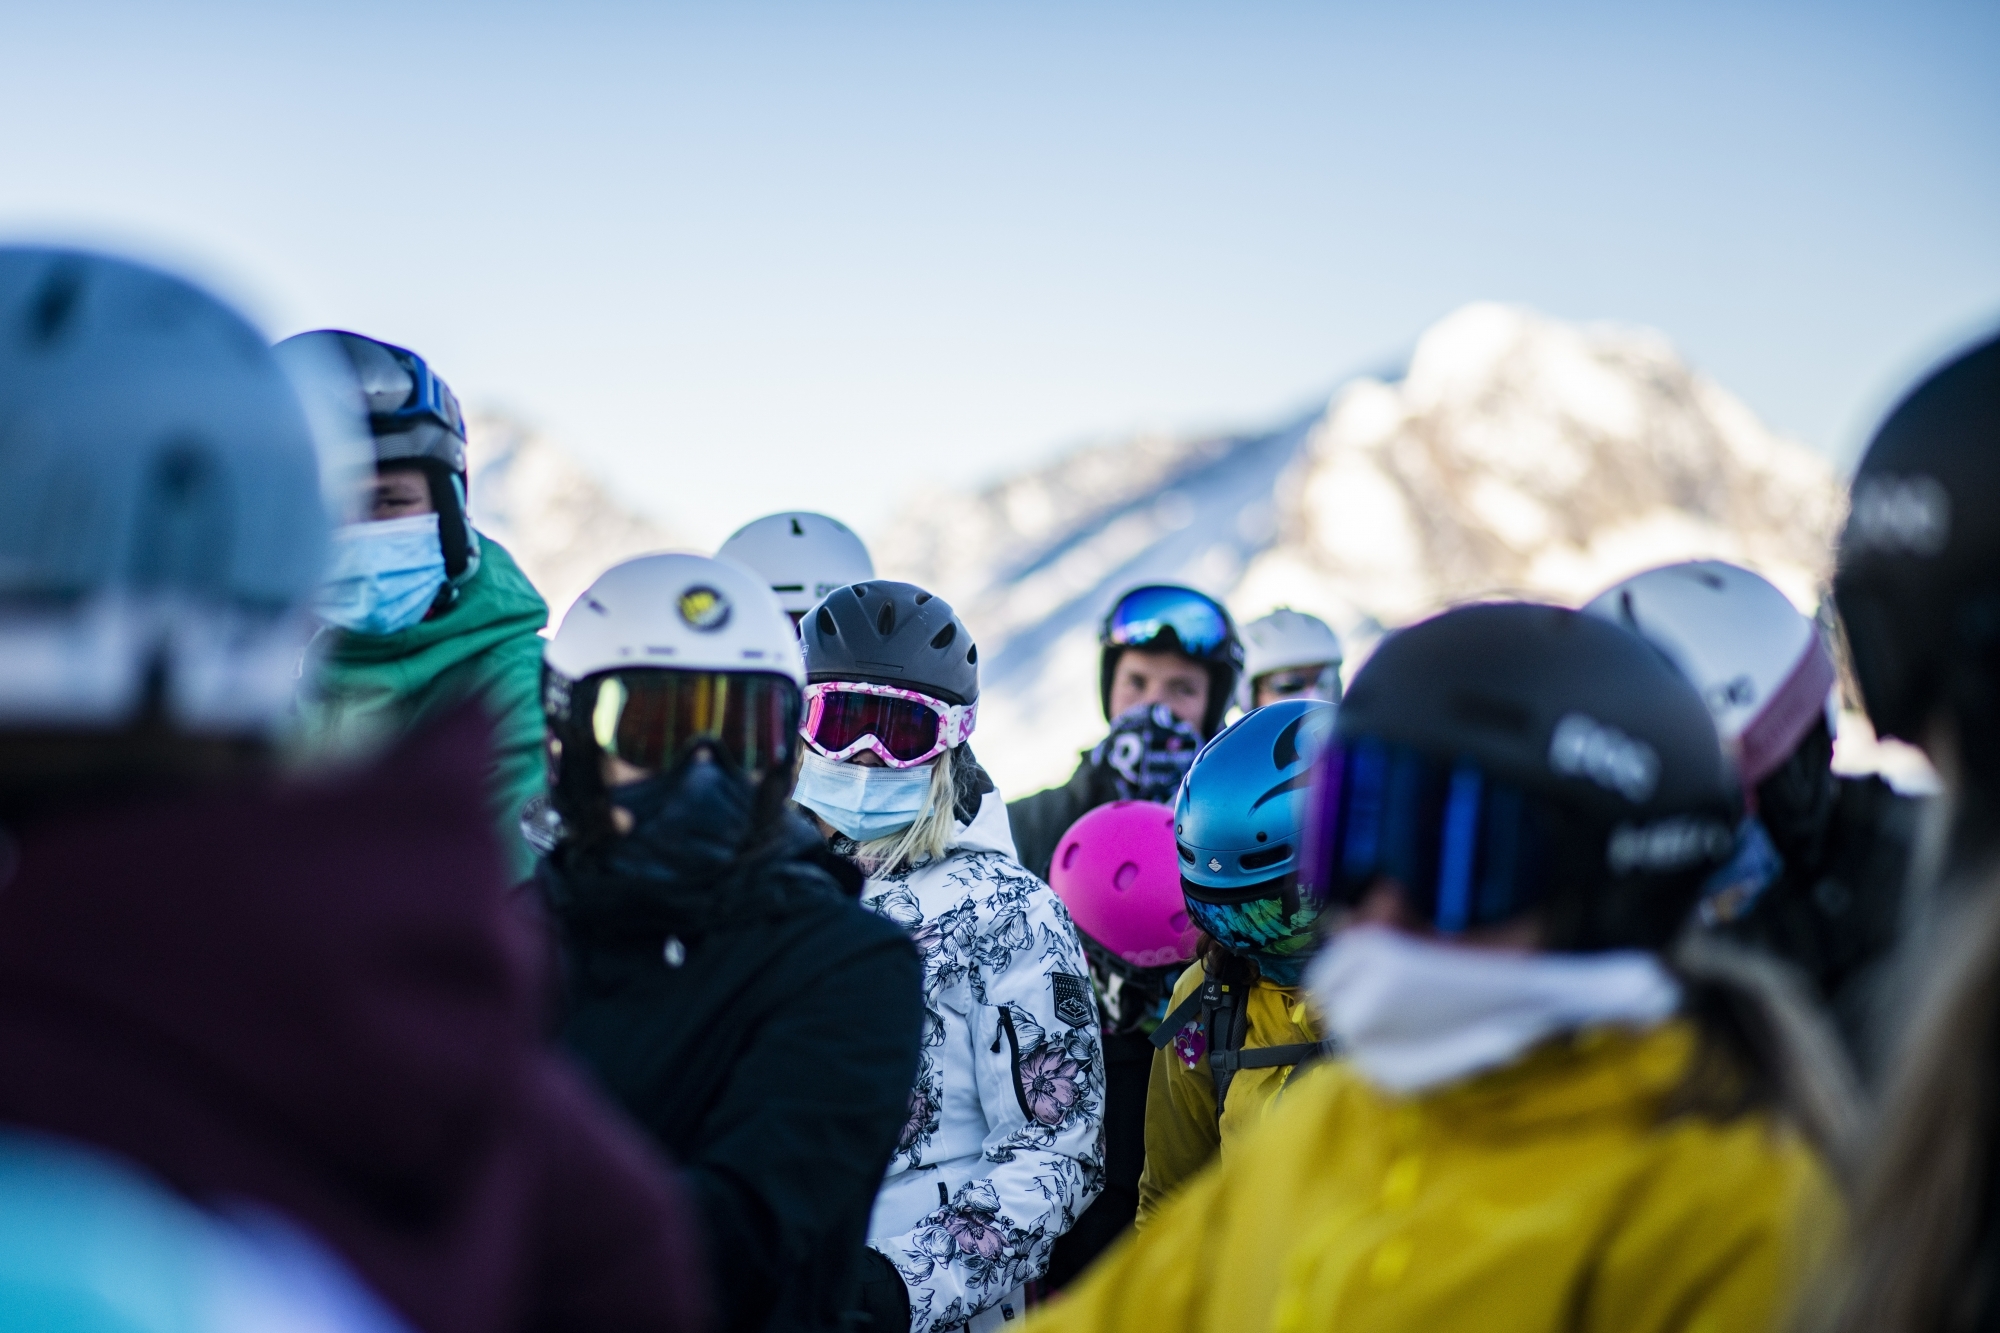 Les skieurs sont venus en nombre, et masqués, durant ce mois de novembre à Saas Fee.